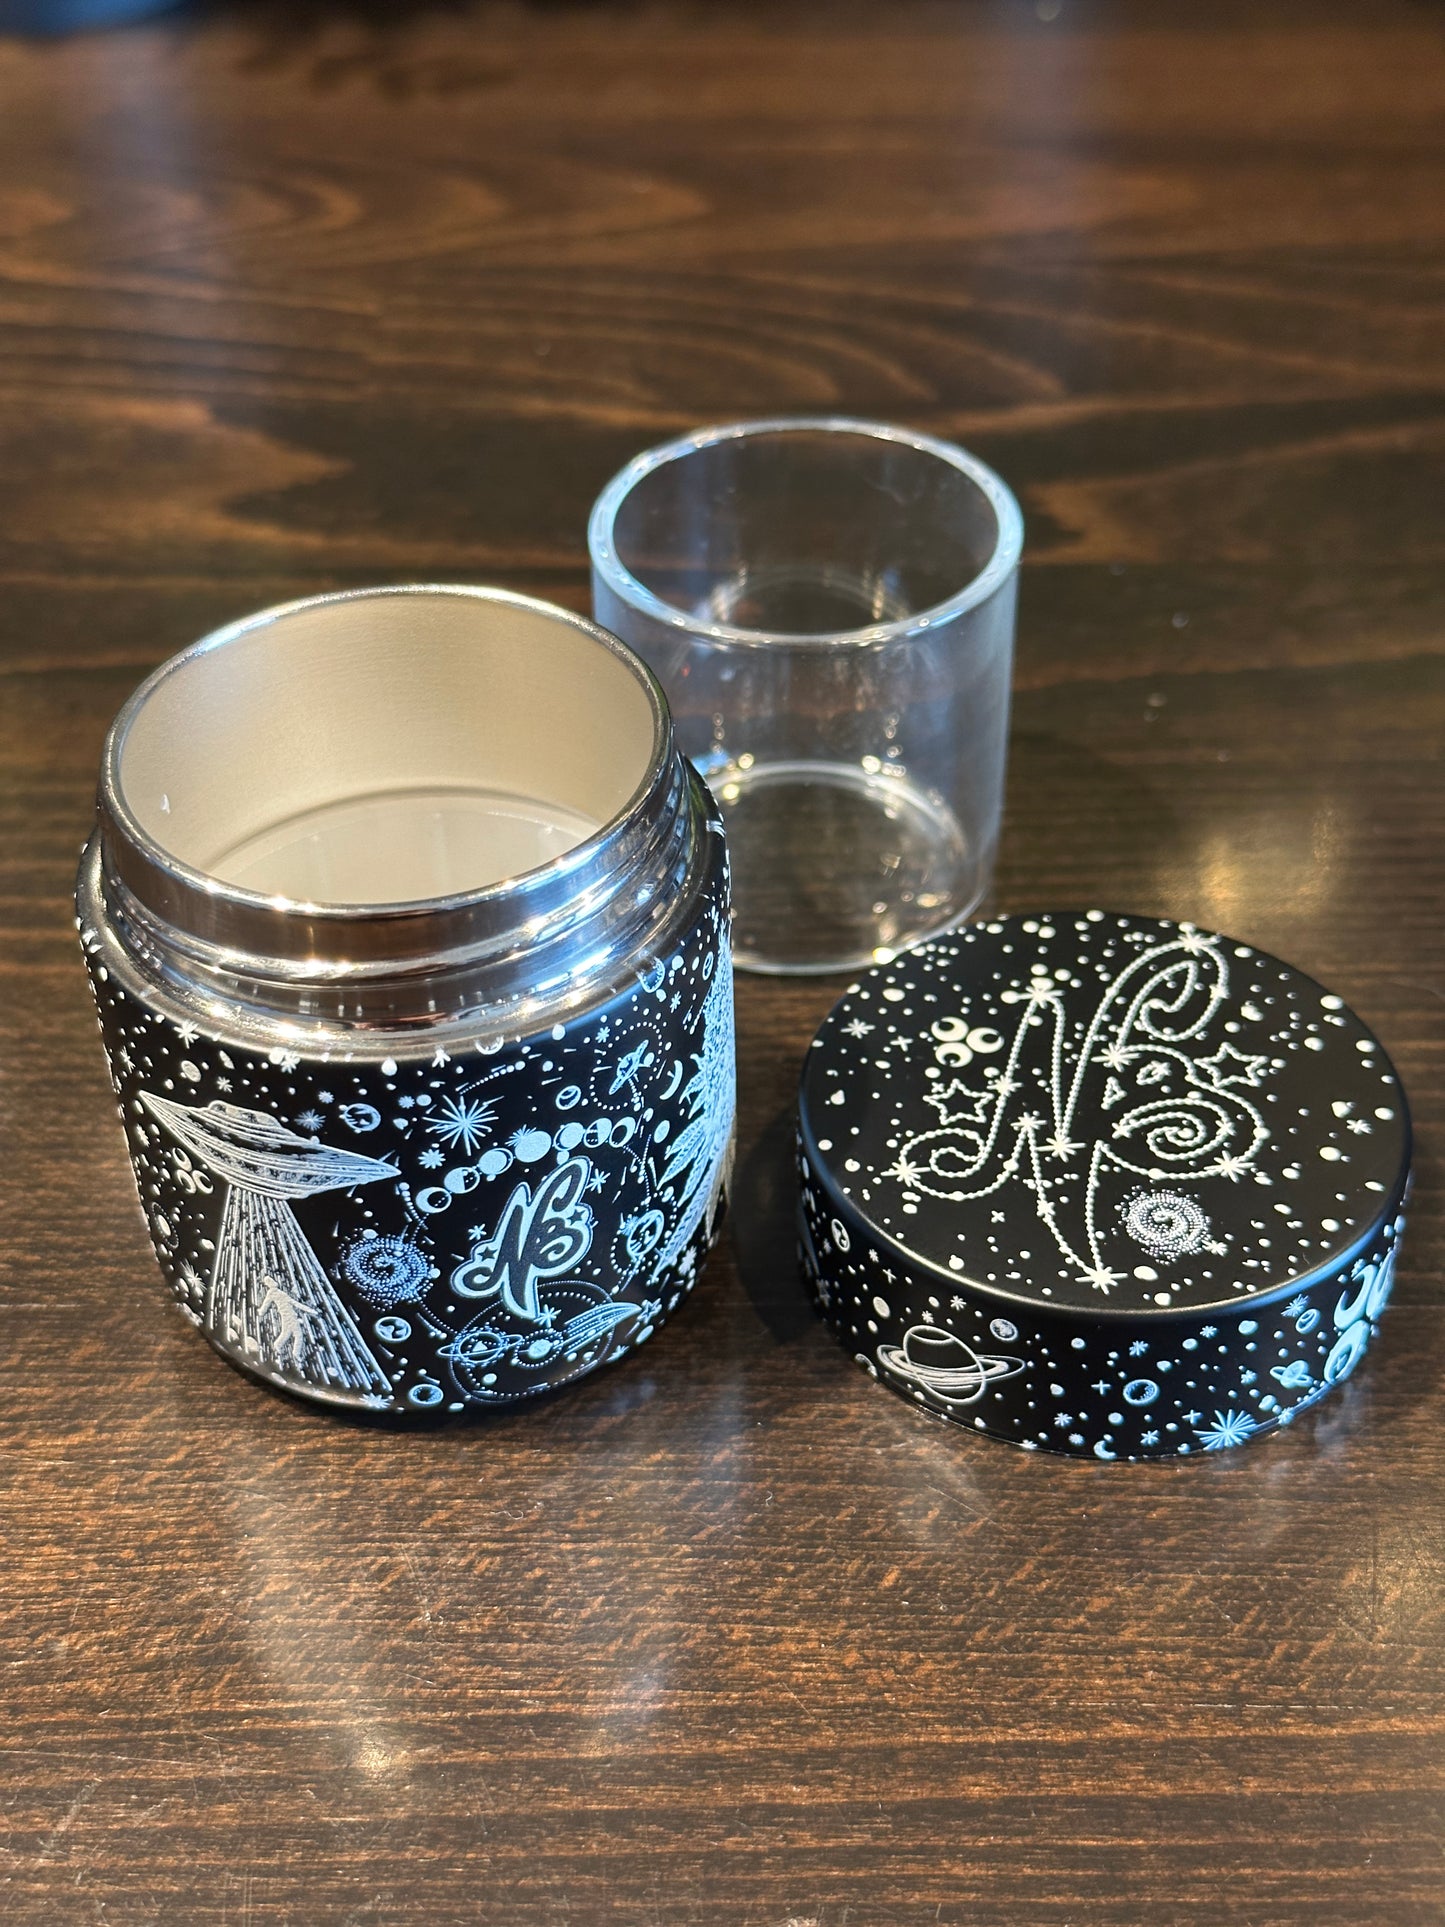 N8 x Alchemy Jars